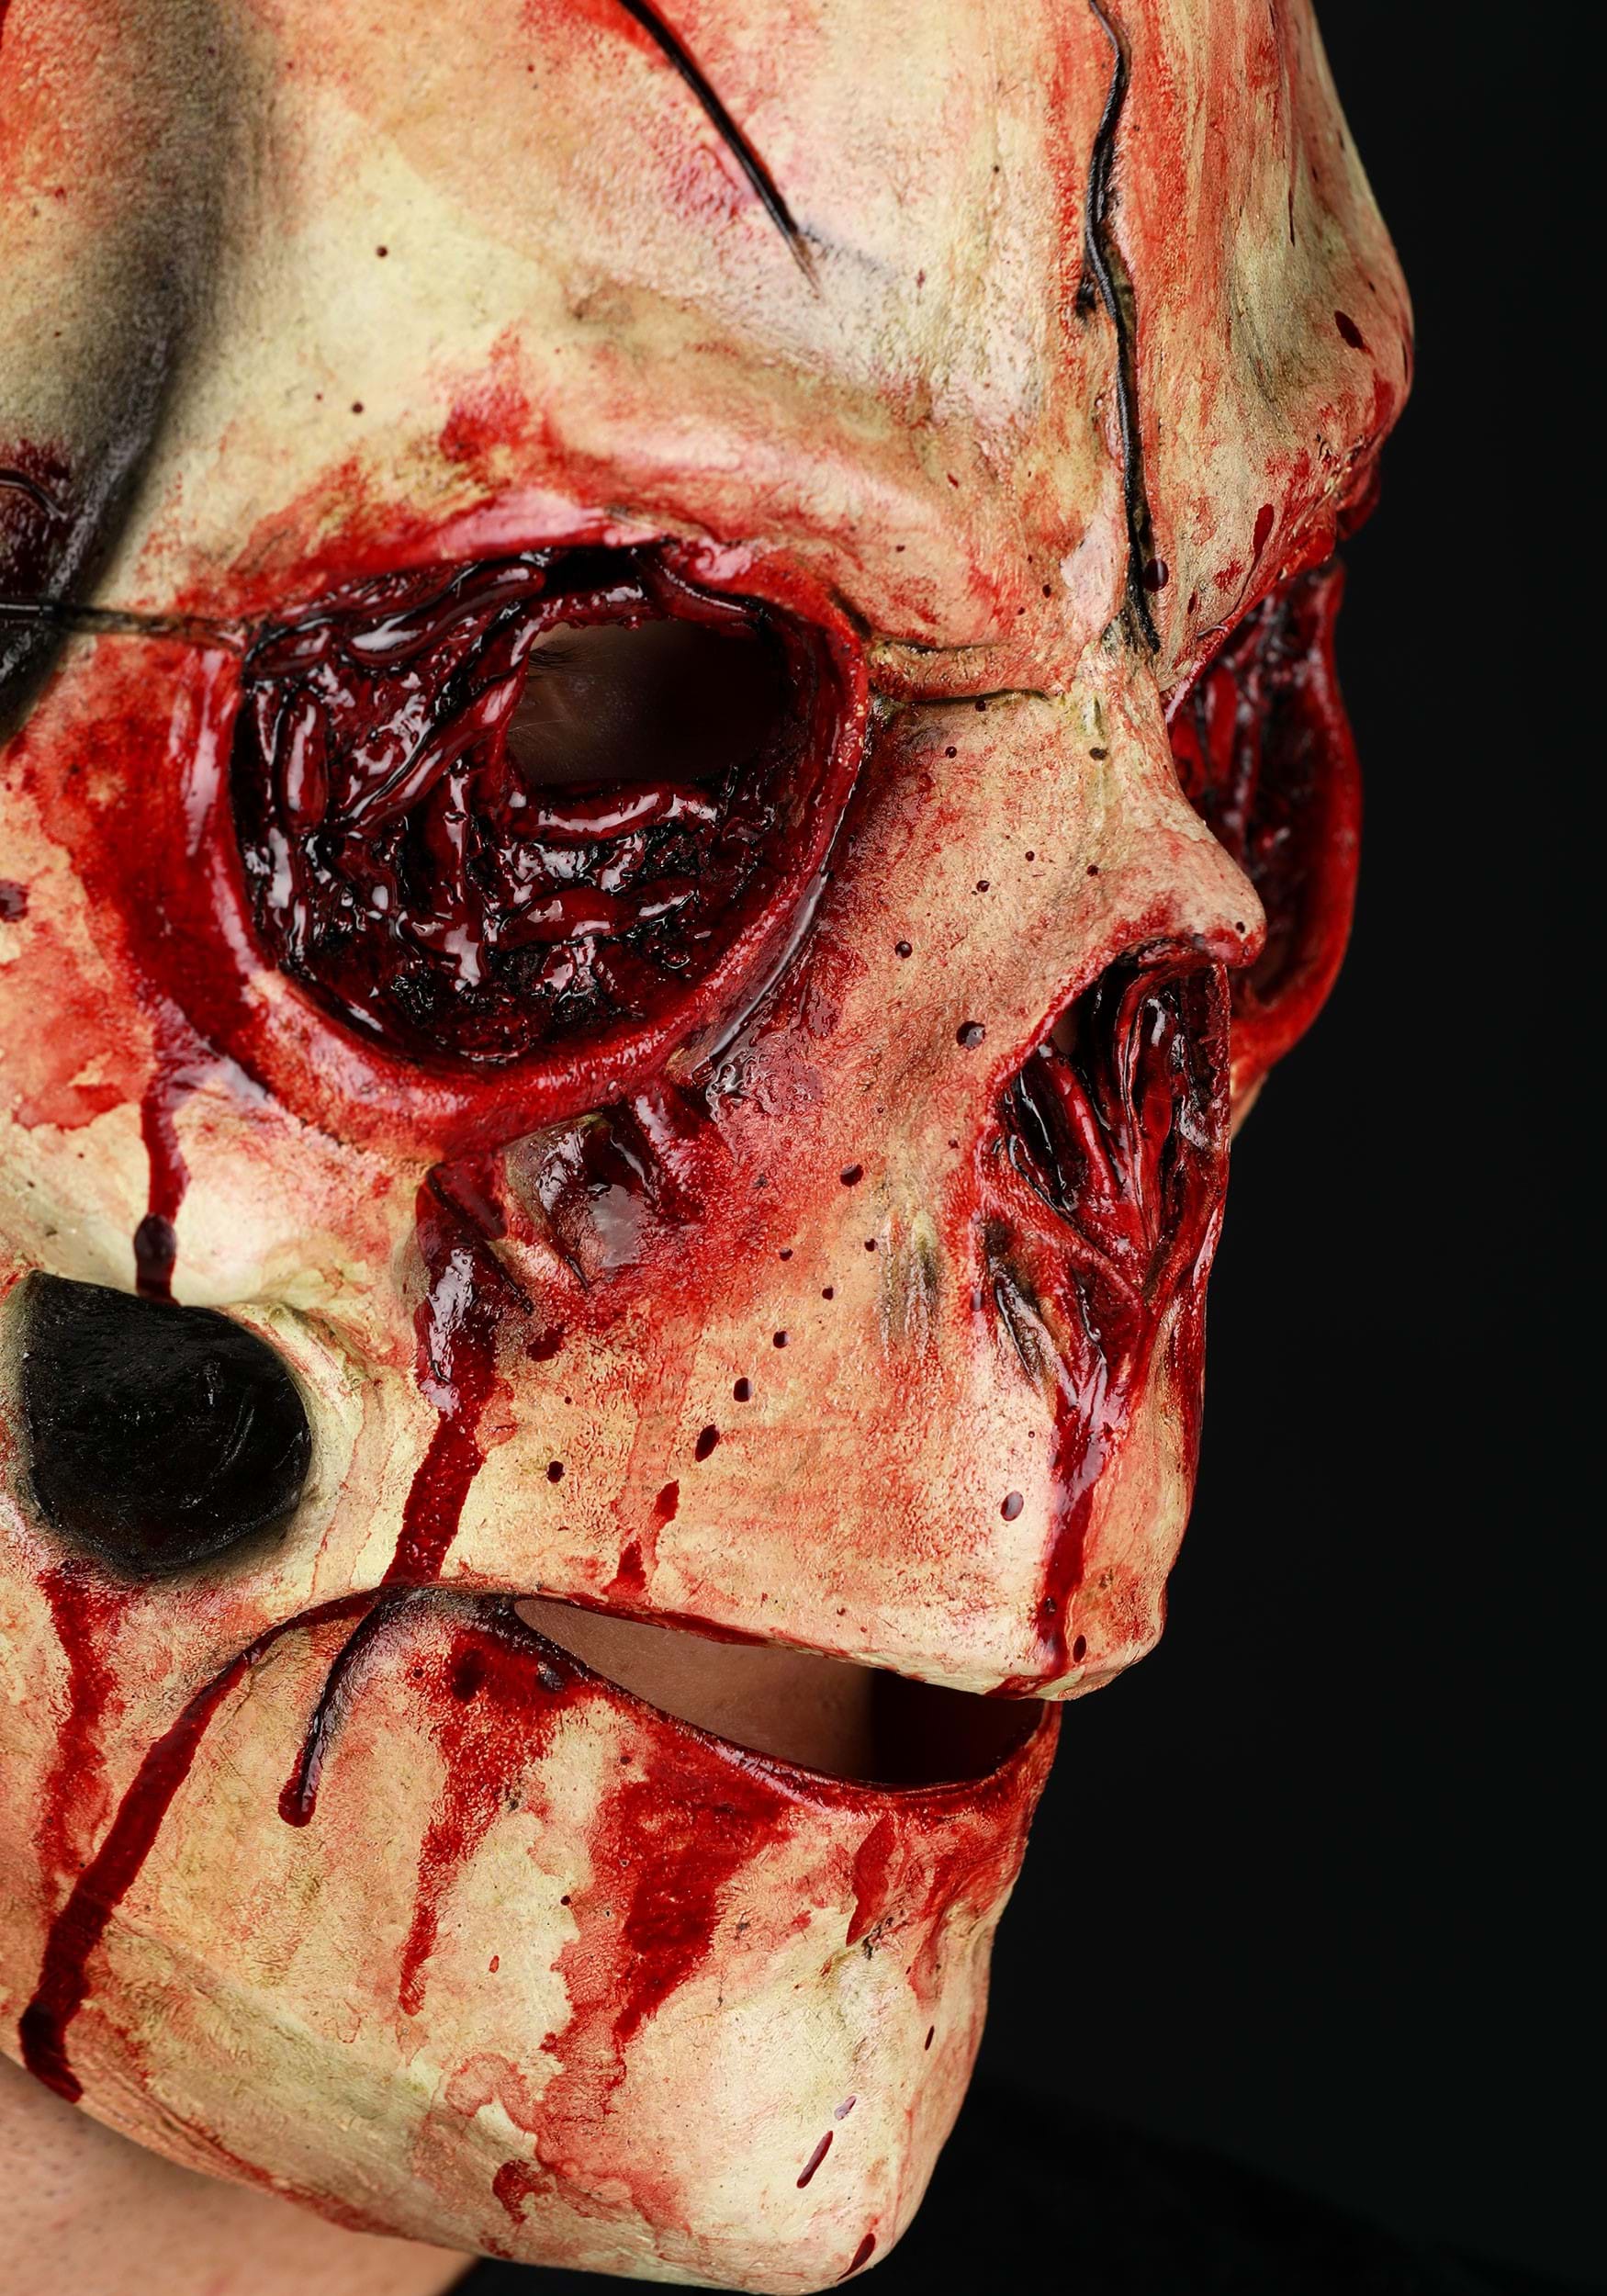 Cracked Skull Latex Adult Mask , Horror Halloween Masks